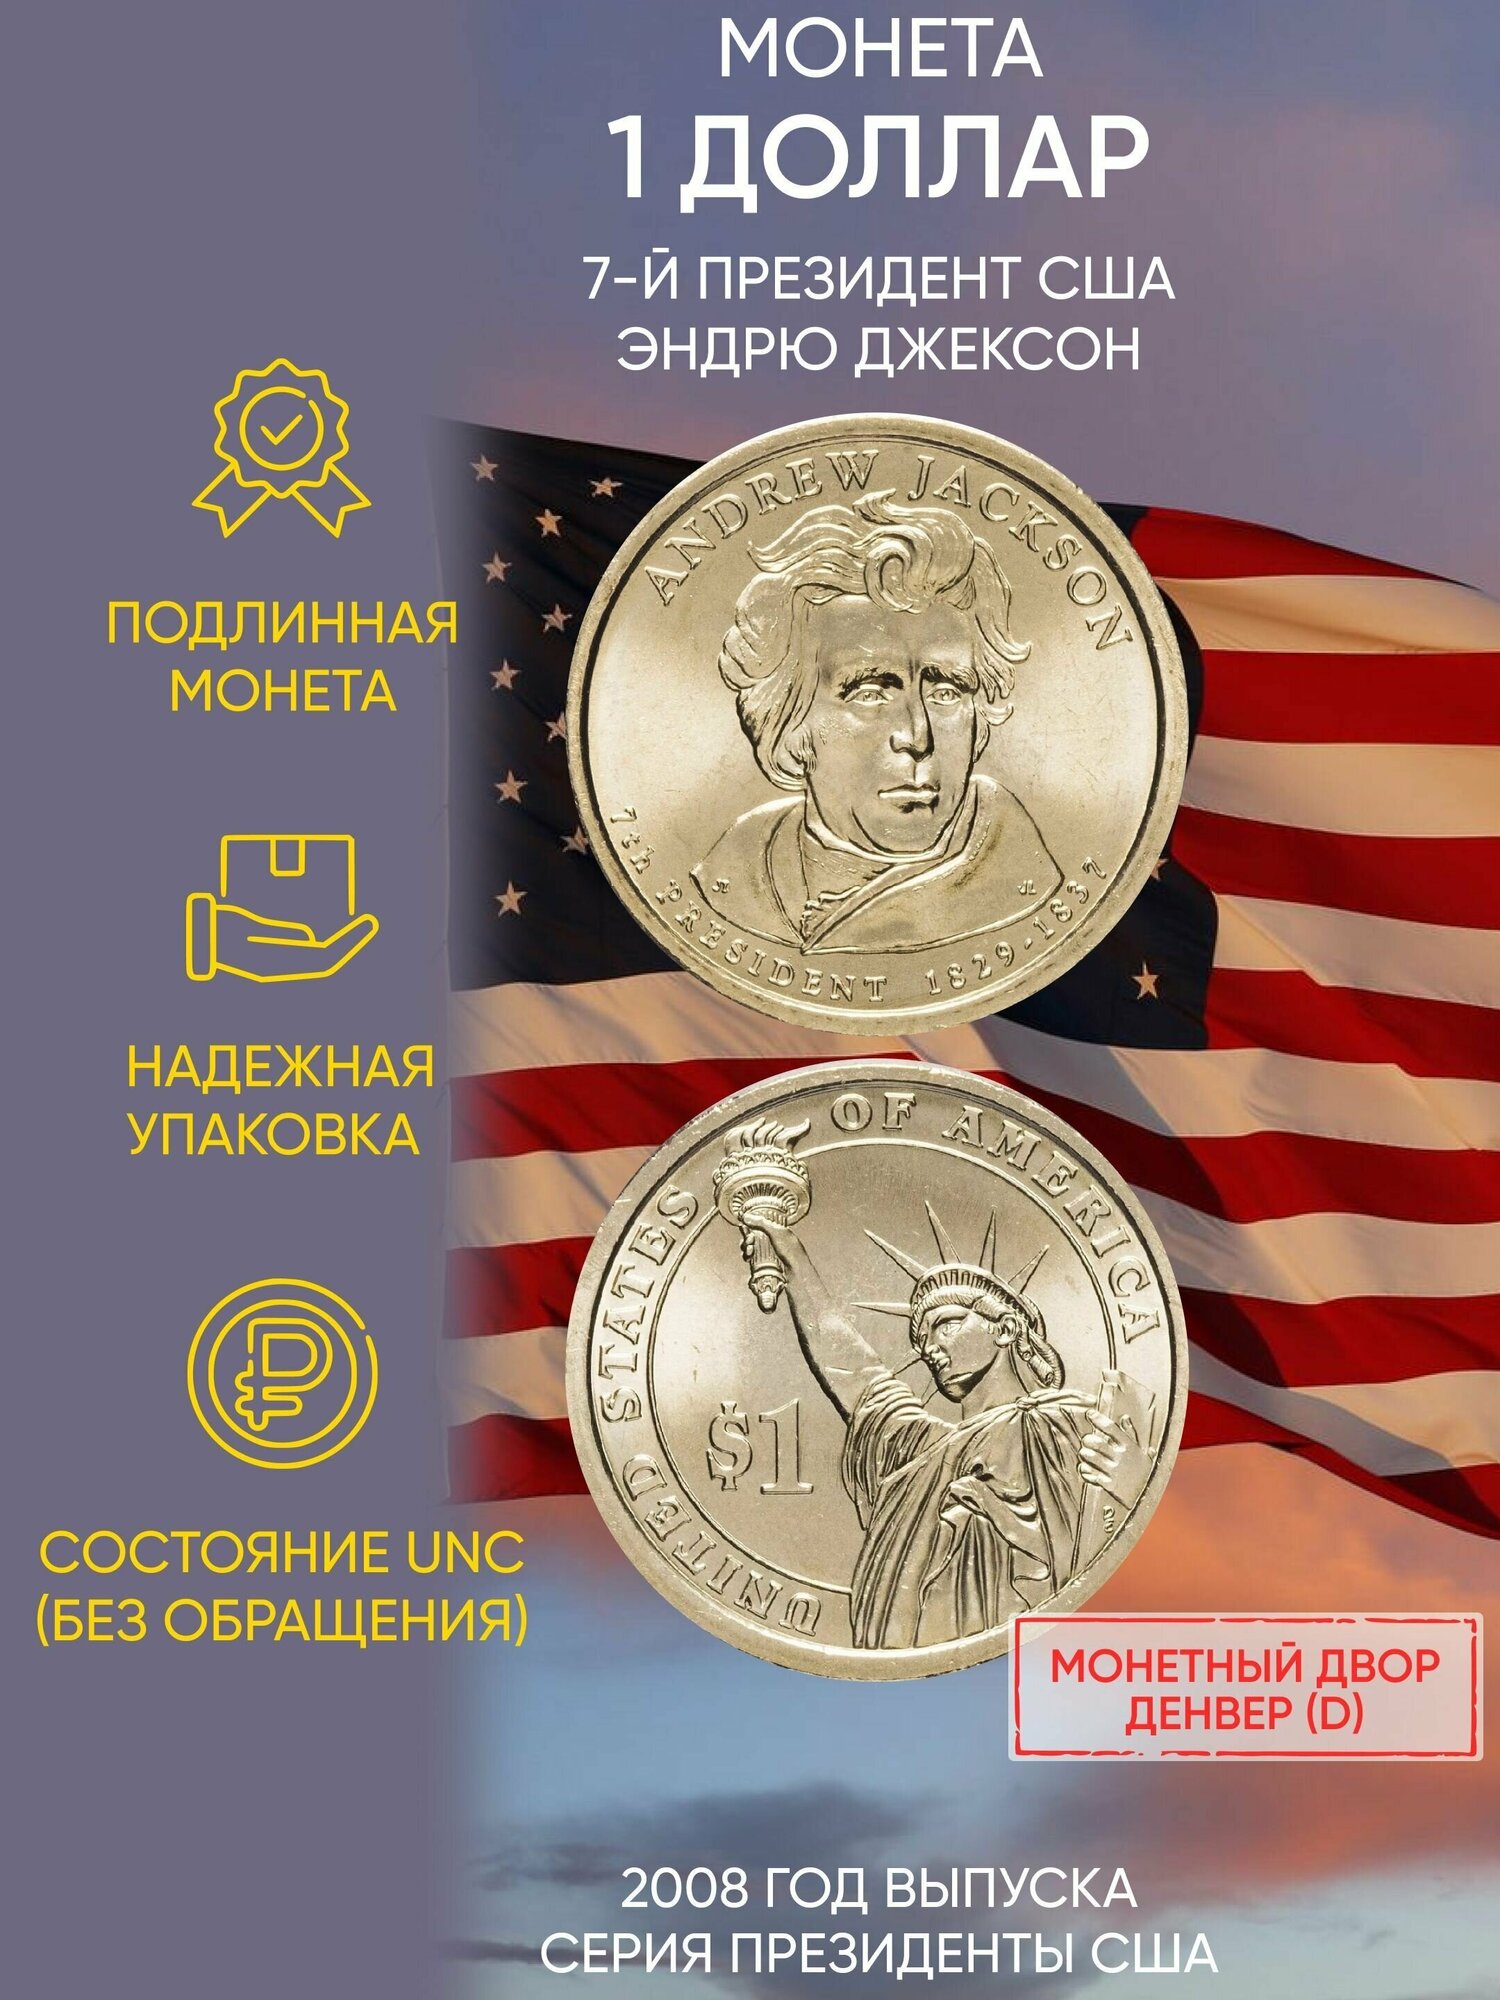 Монета 1 доллар Эндрю Джексон. Президенты. США. D, 2008 г. в. Состояние UNC (из мешка)